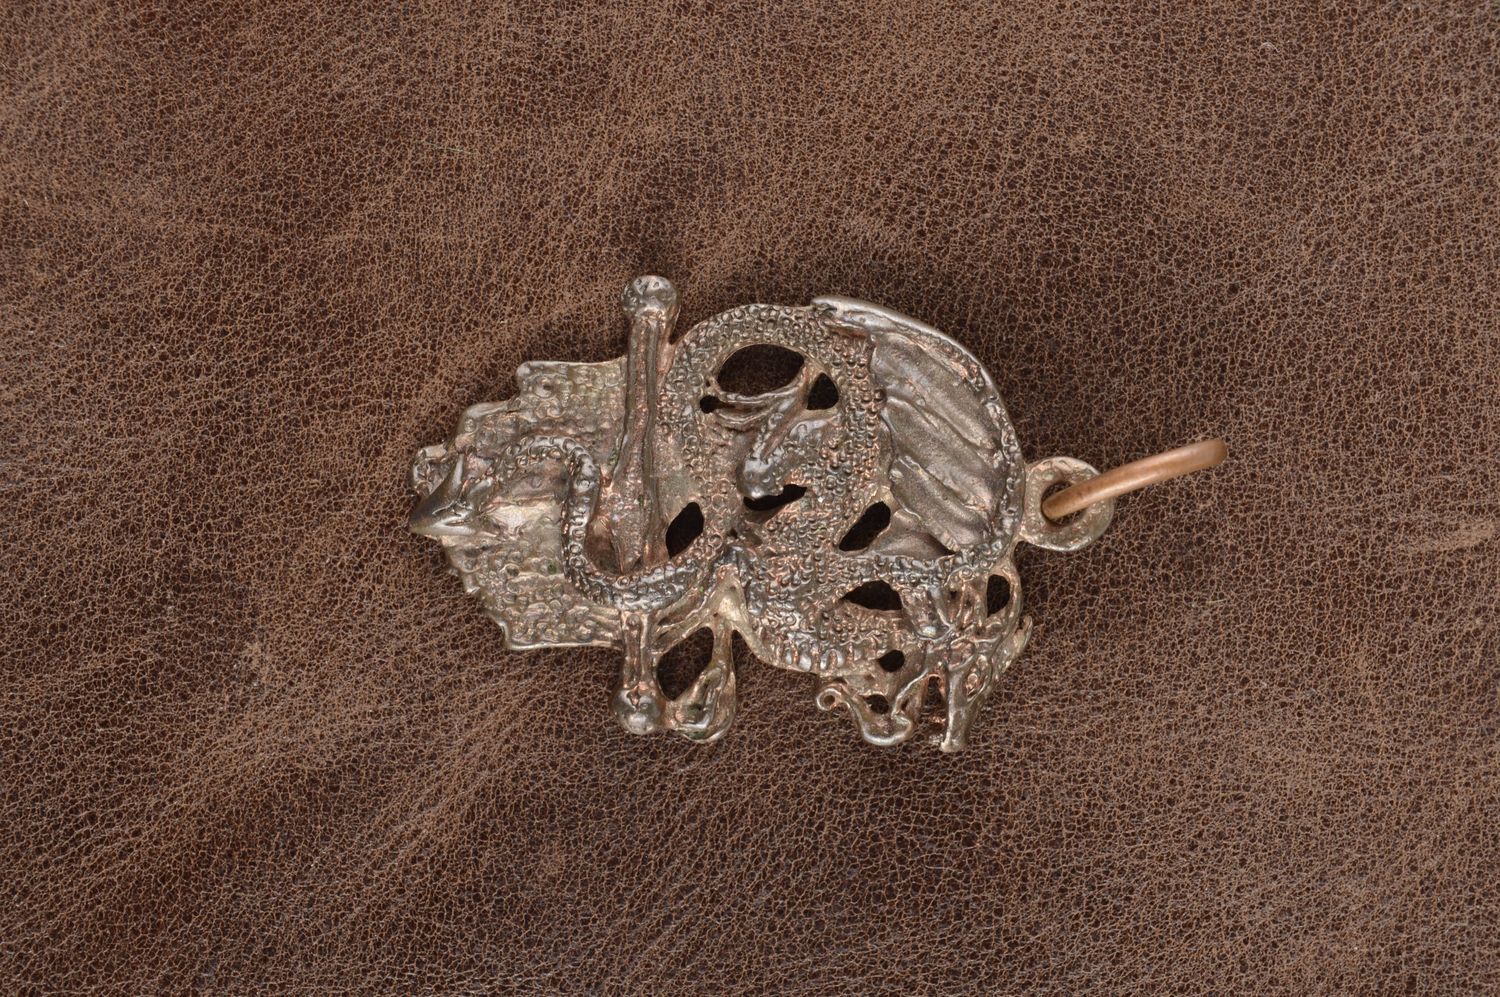 Handmade jewelry handmade pendant bronze pendant bronze accessories for girls photo 1